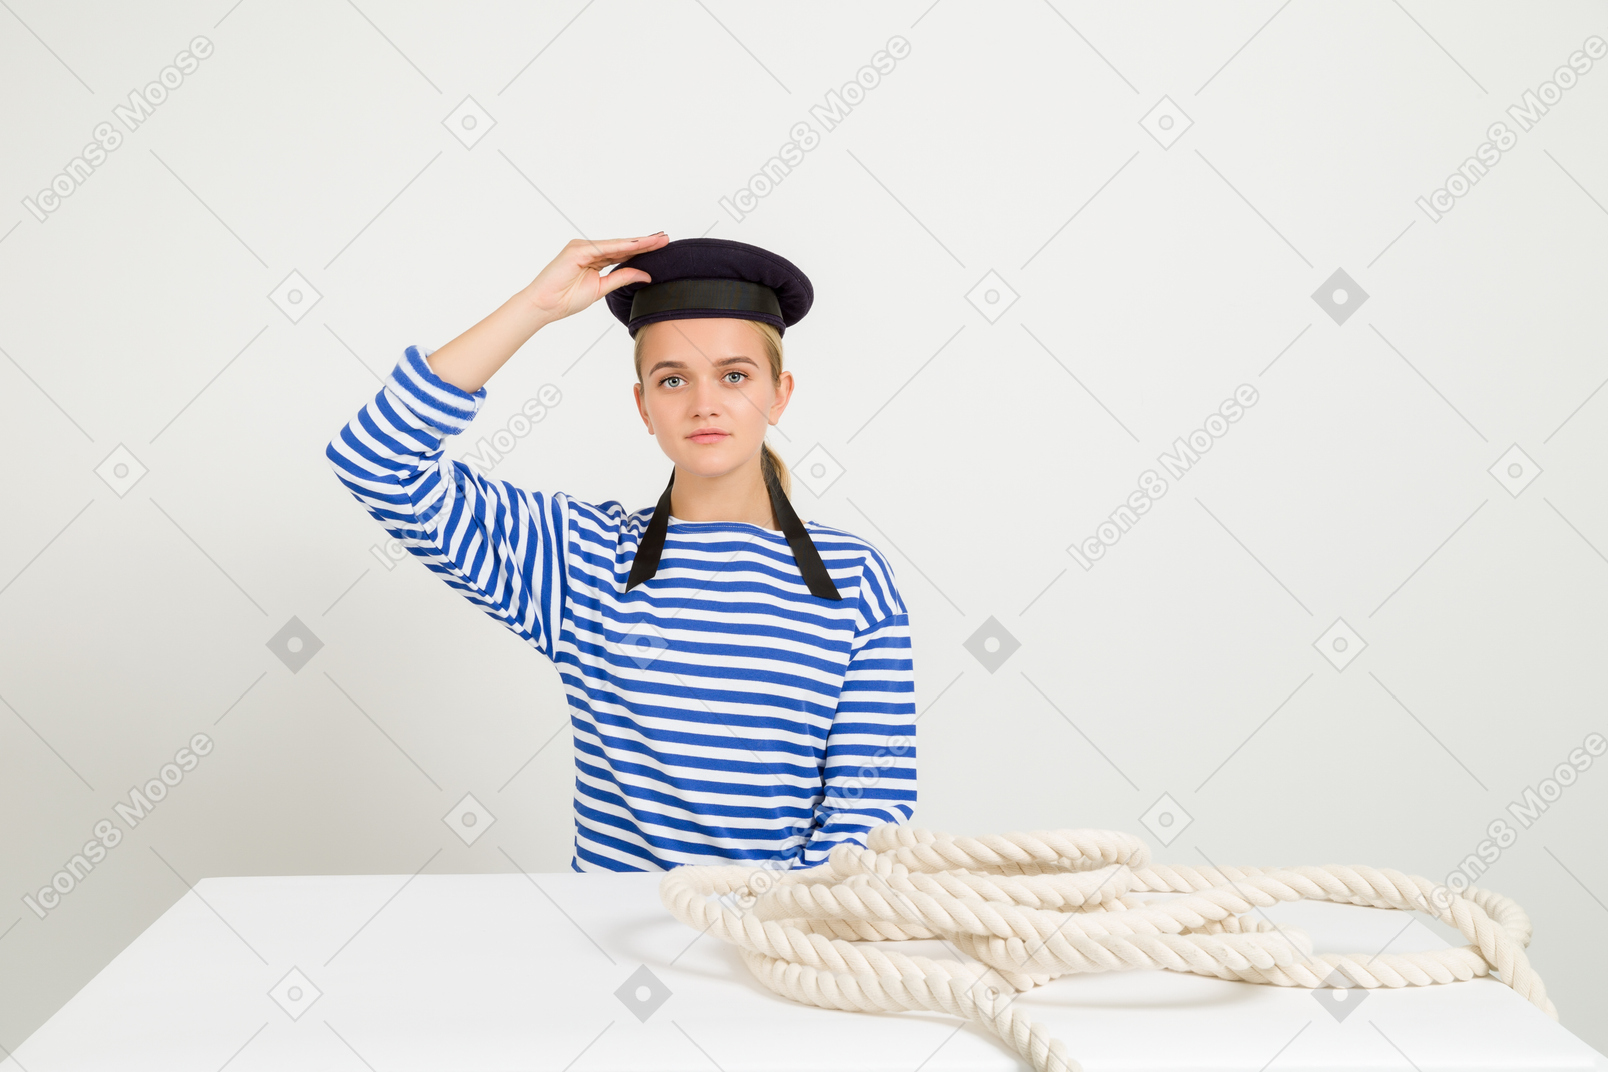 Marinero familiar sentado en la mesa con una cuerda marina y sosteniendo una gorra de marinero